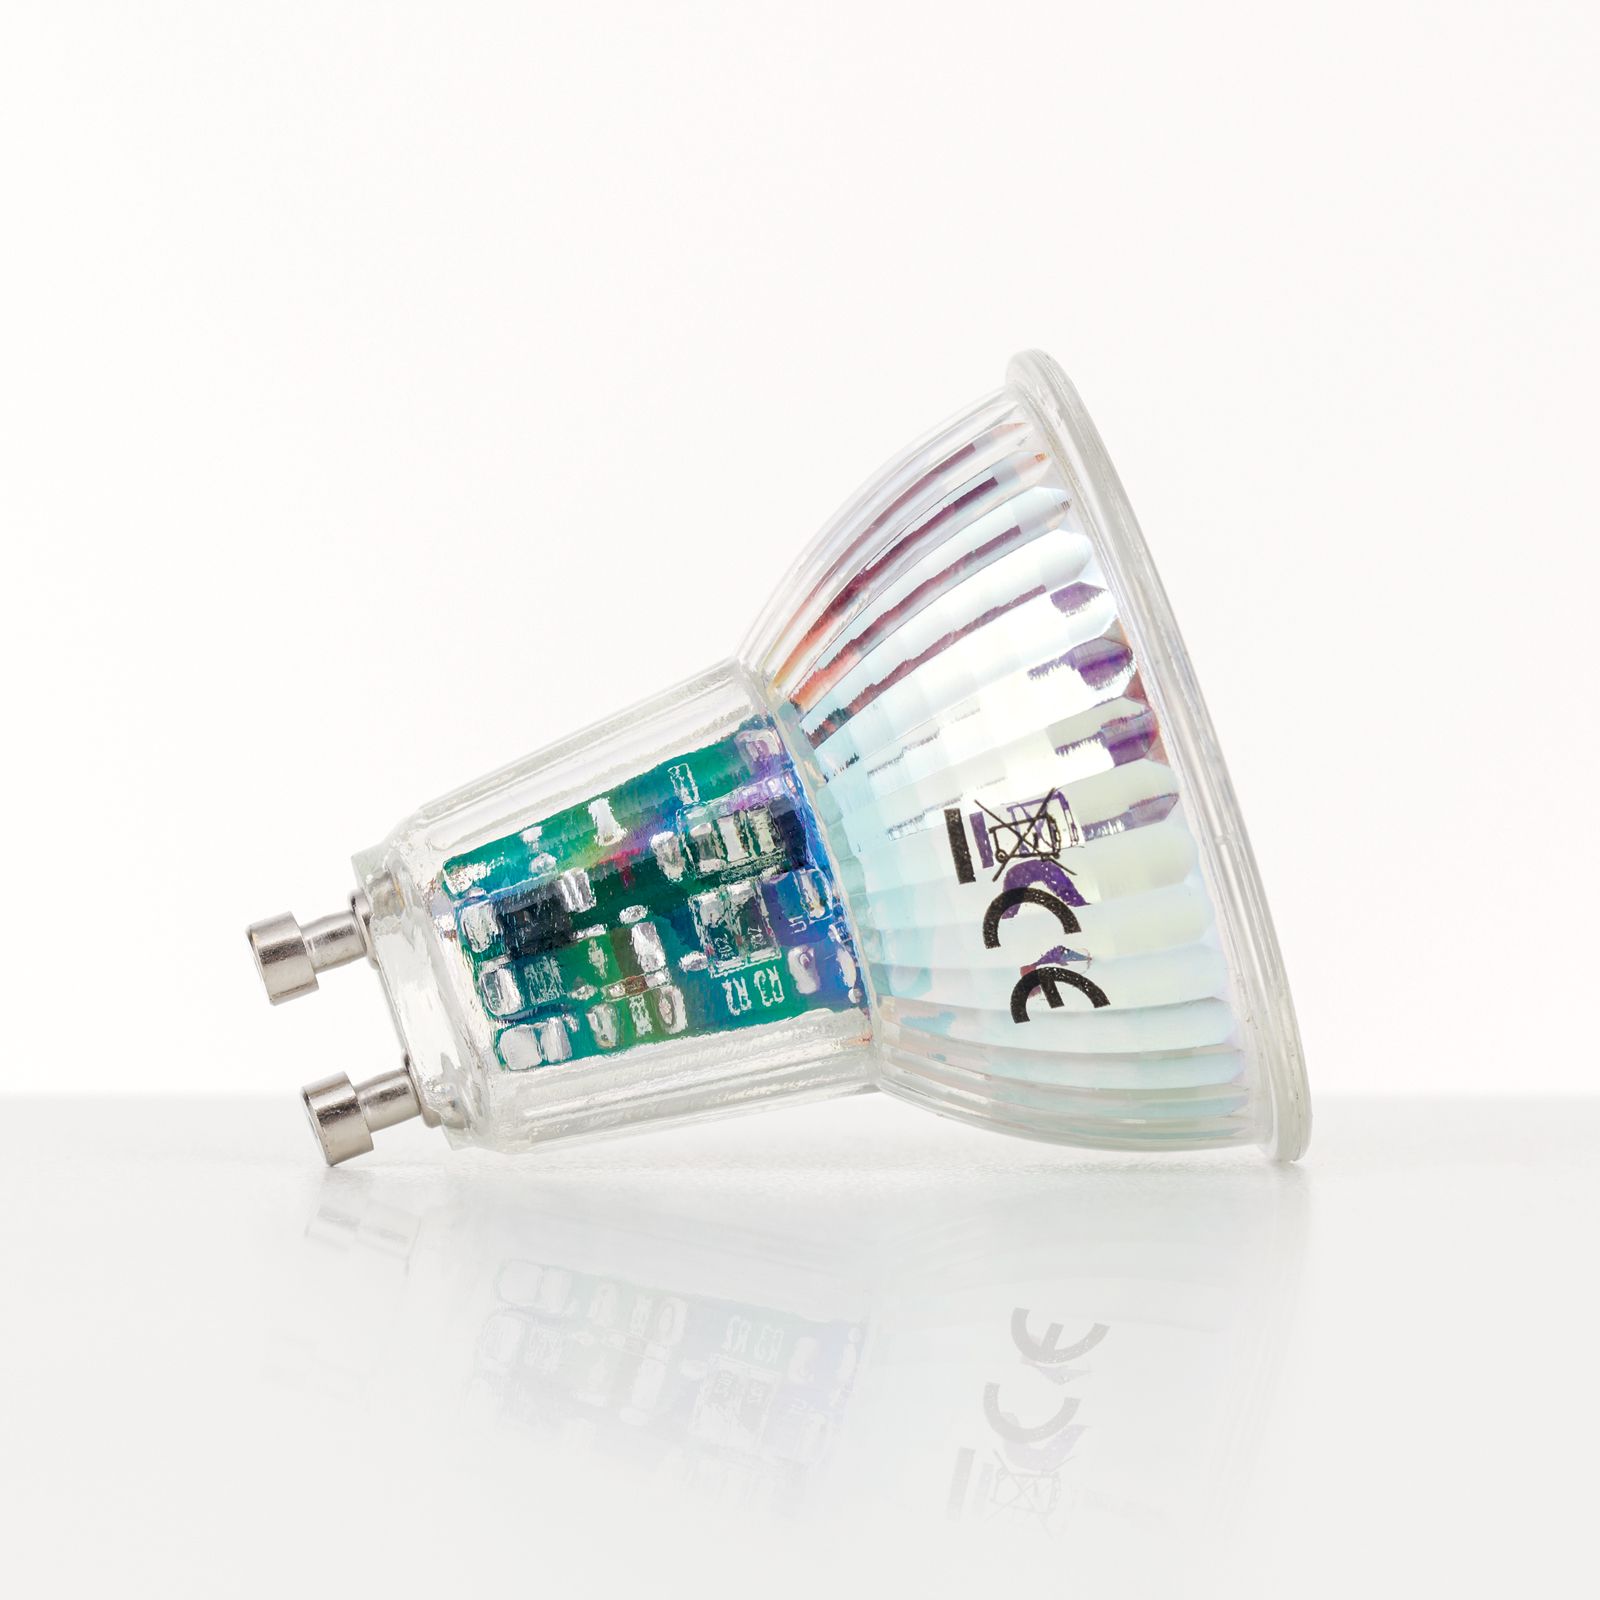 Ampoule LED GU10 Cristal 38º 5W 220V